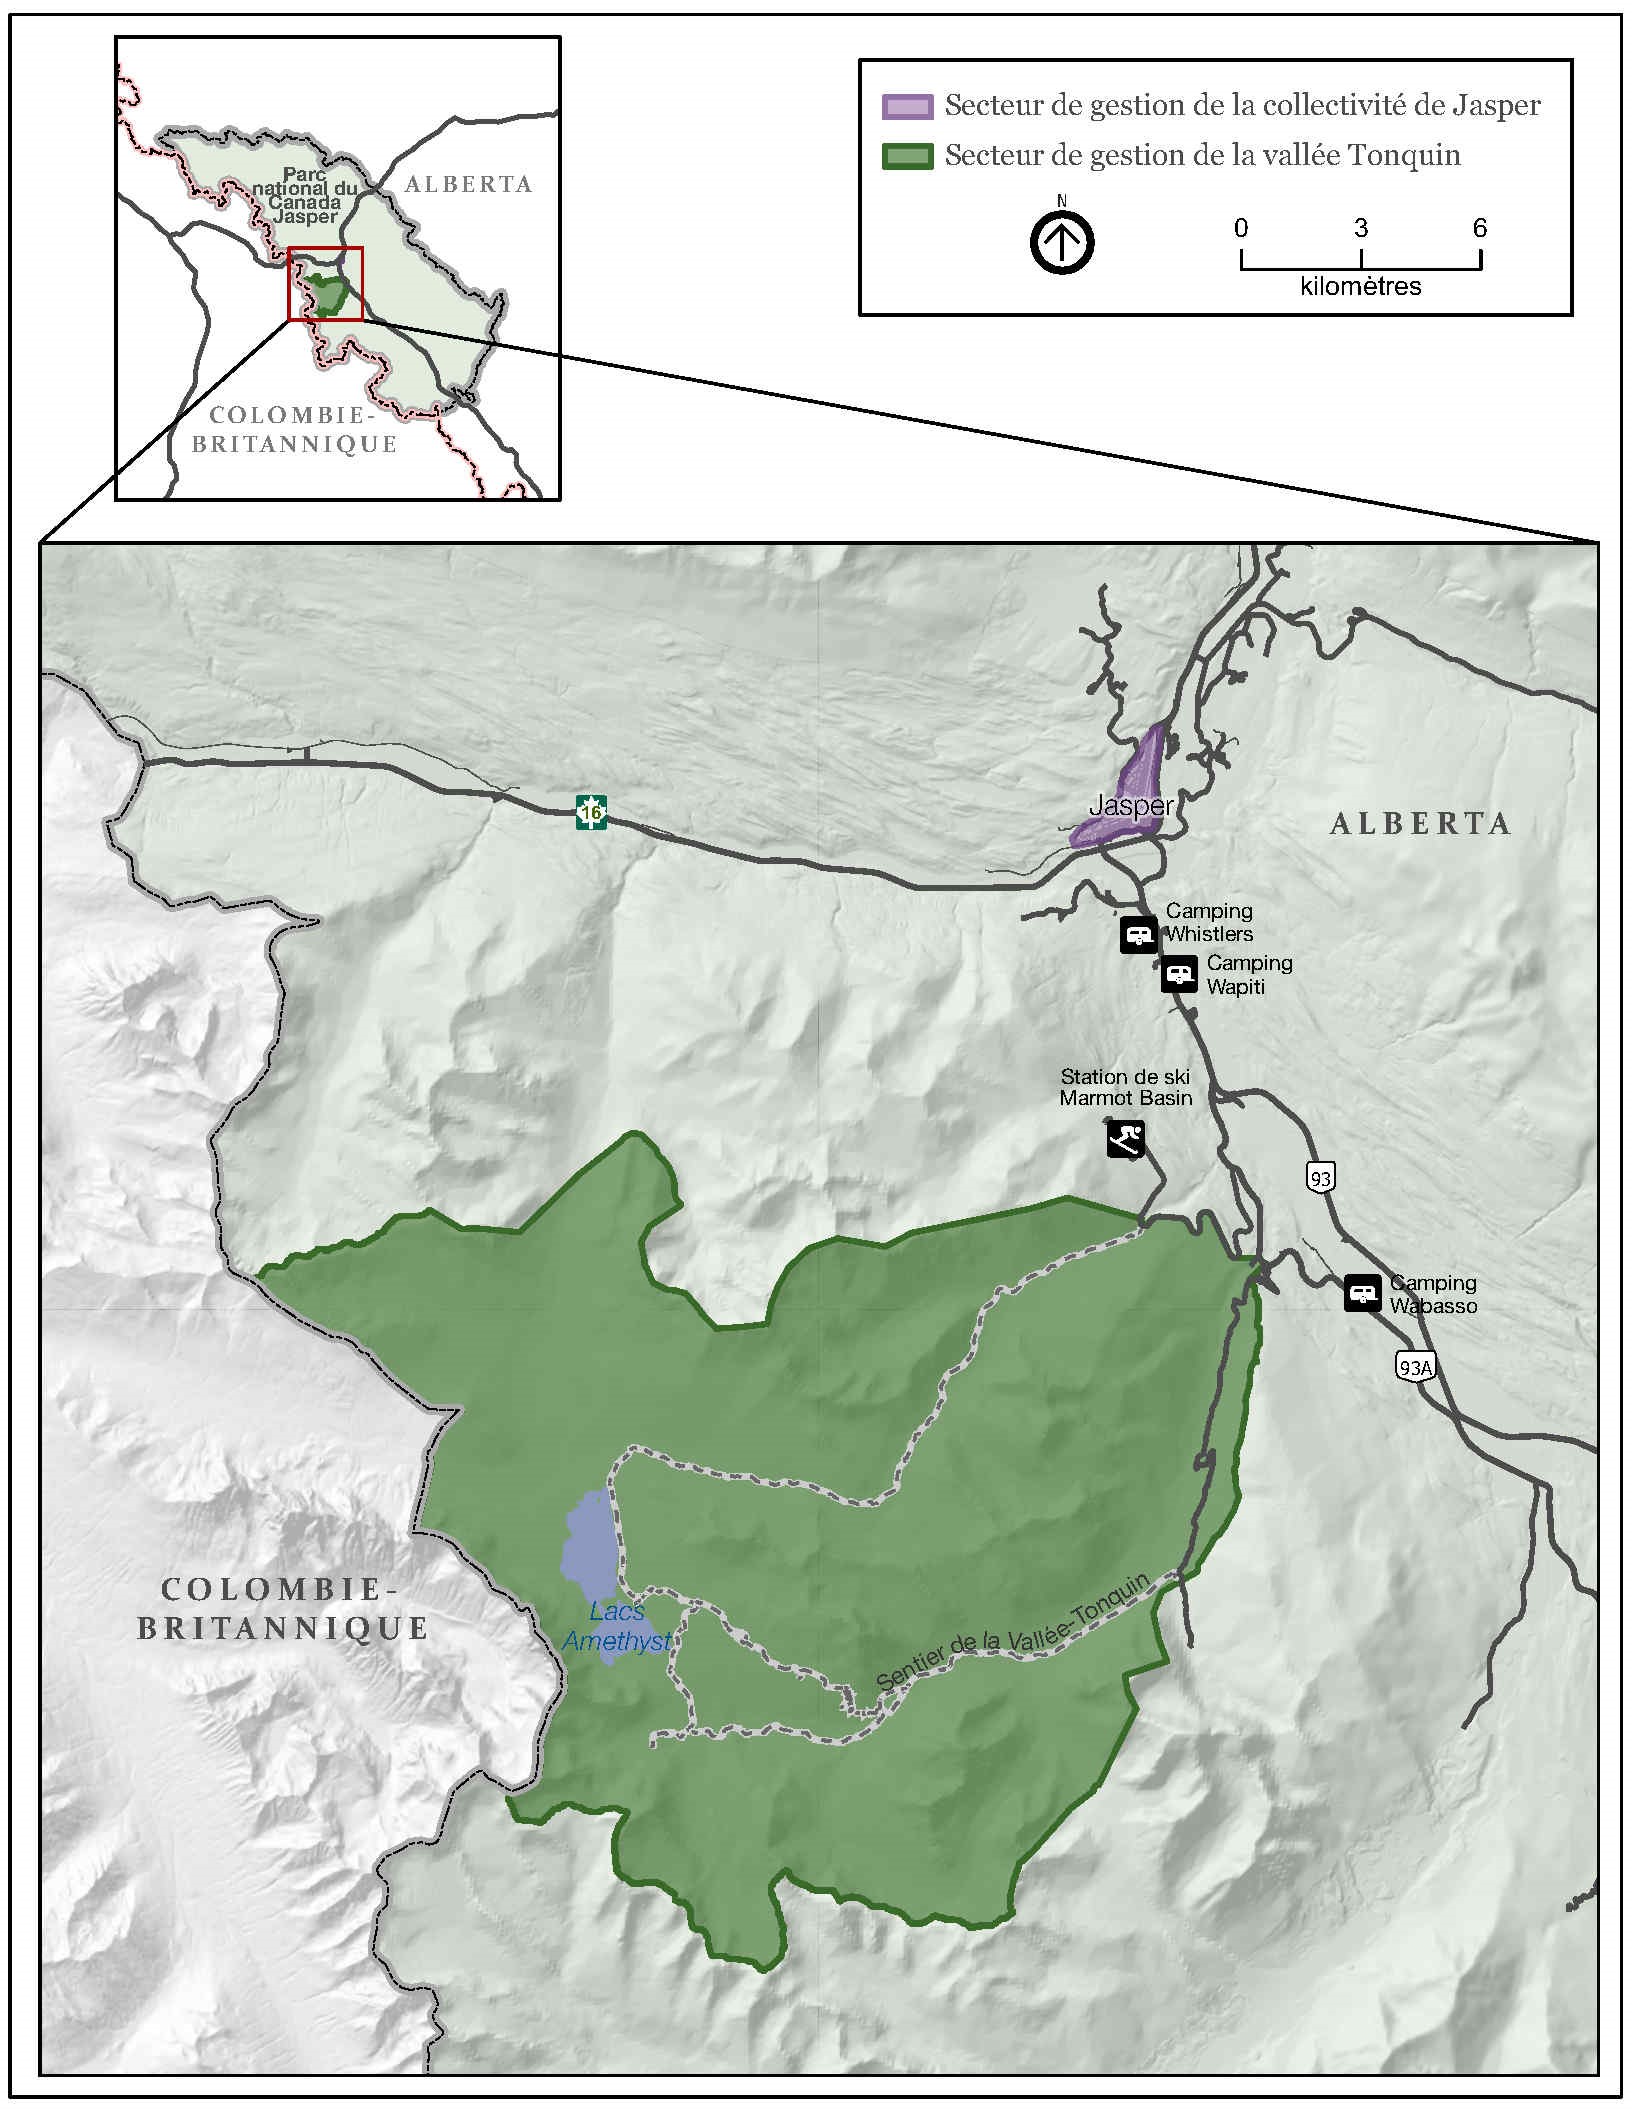 Carte montrant les secteurs de gestion de la collectivité de Jasper et de la vallée Tonquin dans le parc national de Jasper.